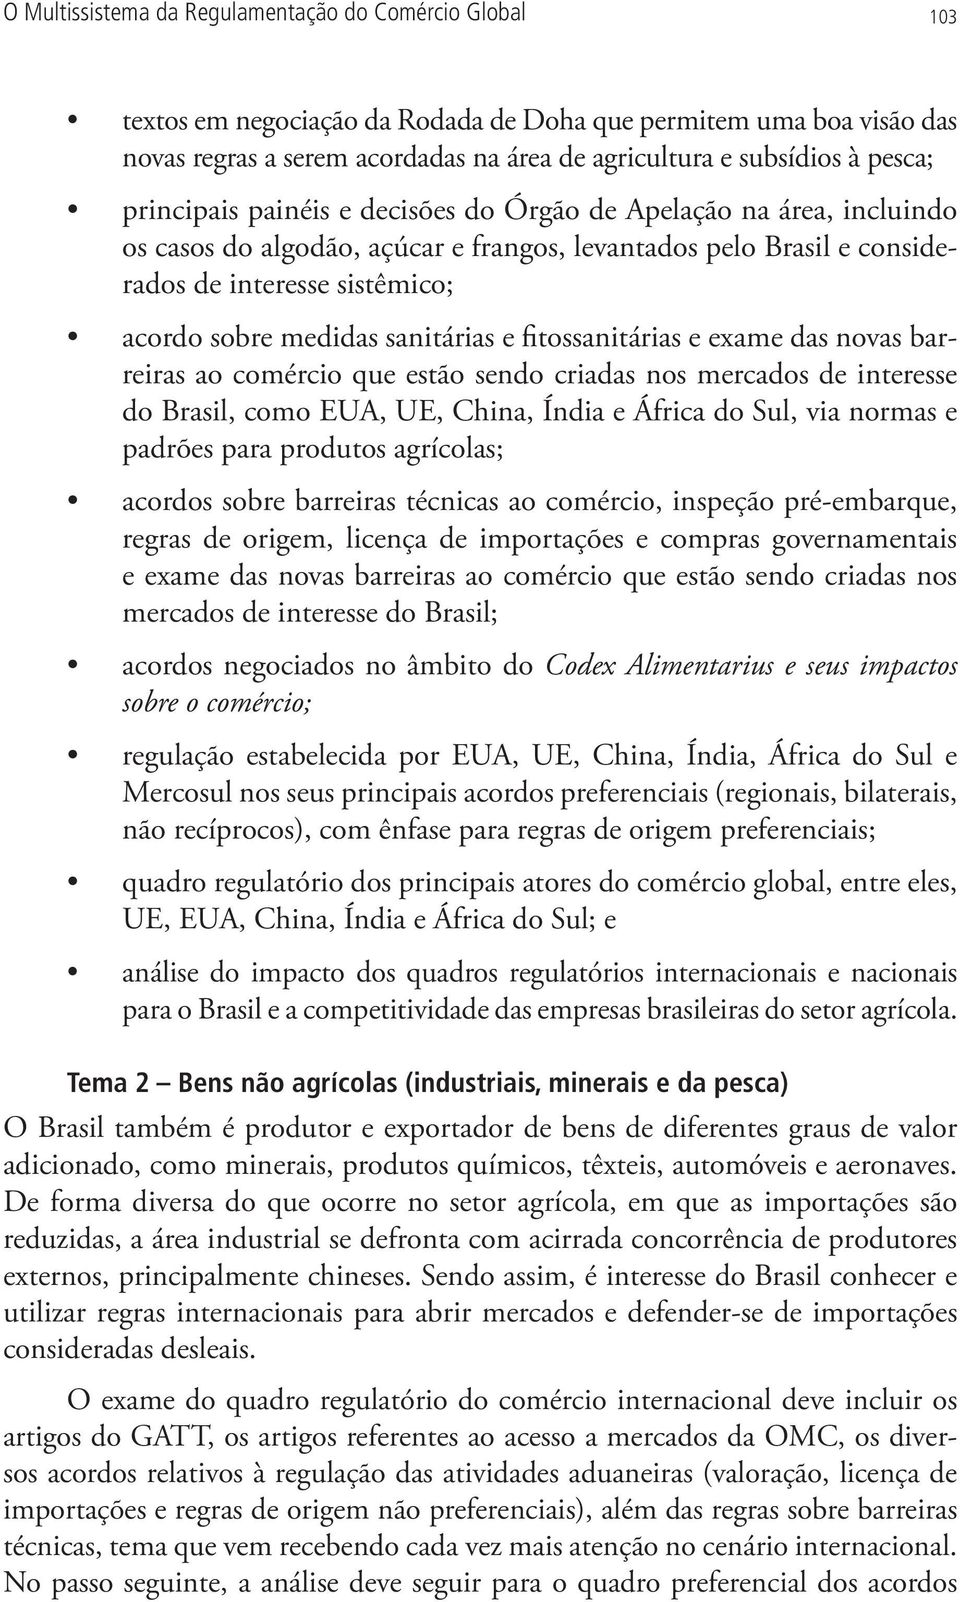 sanitárias e fitossanitárias e exame das novas barreiras ao comércio que estão sendo criadas nos mercados de interesse do Brasil, como EUA, UE, China, Índia e África do Sul, via normas e padrões para